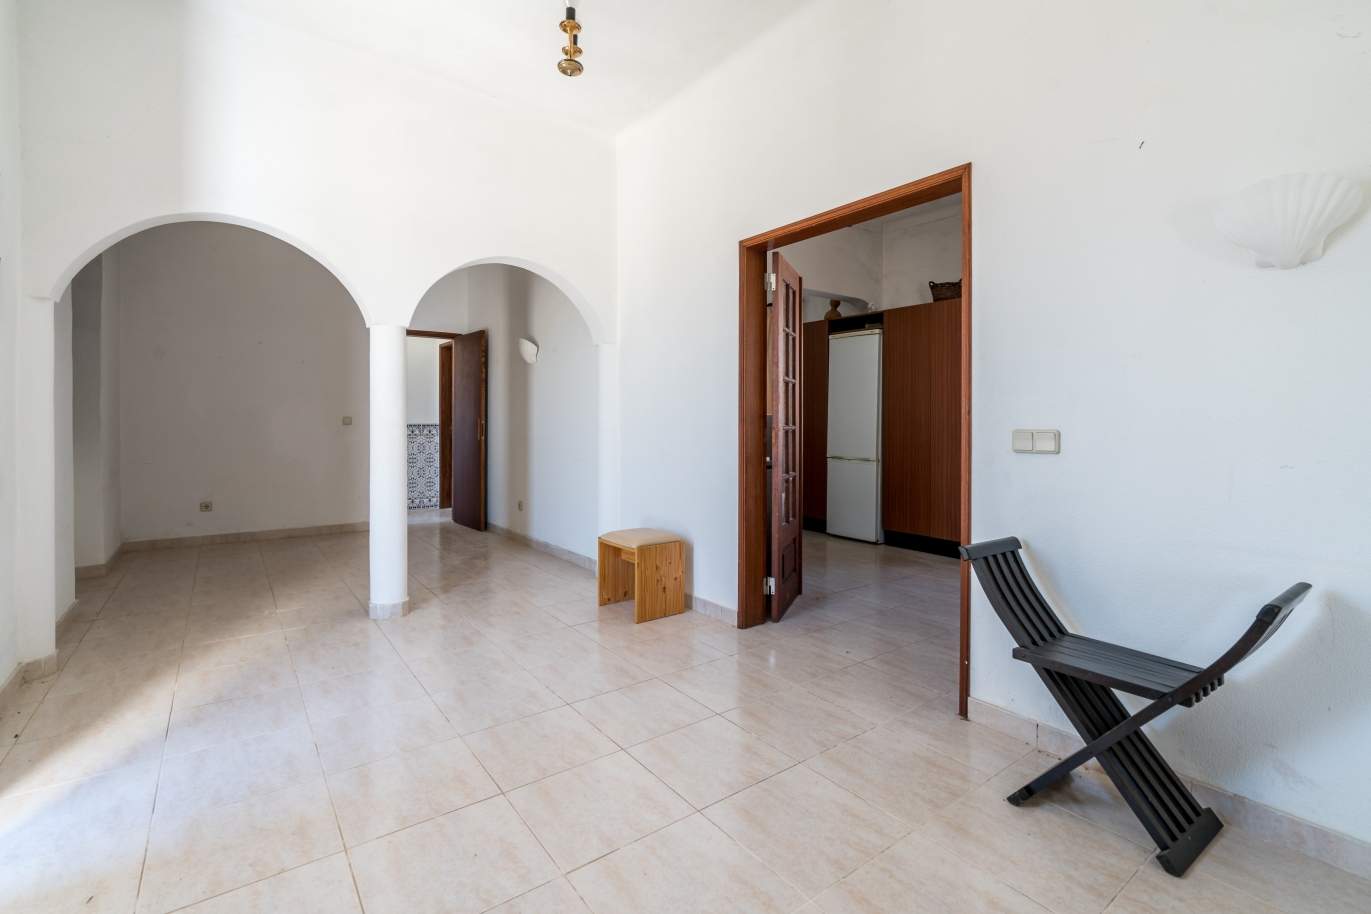 Sale of property in Alcantarilha, Silves, Algarve, Portugal_107982